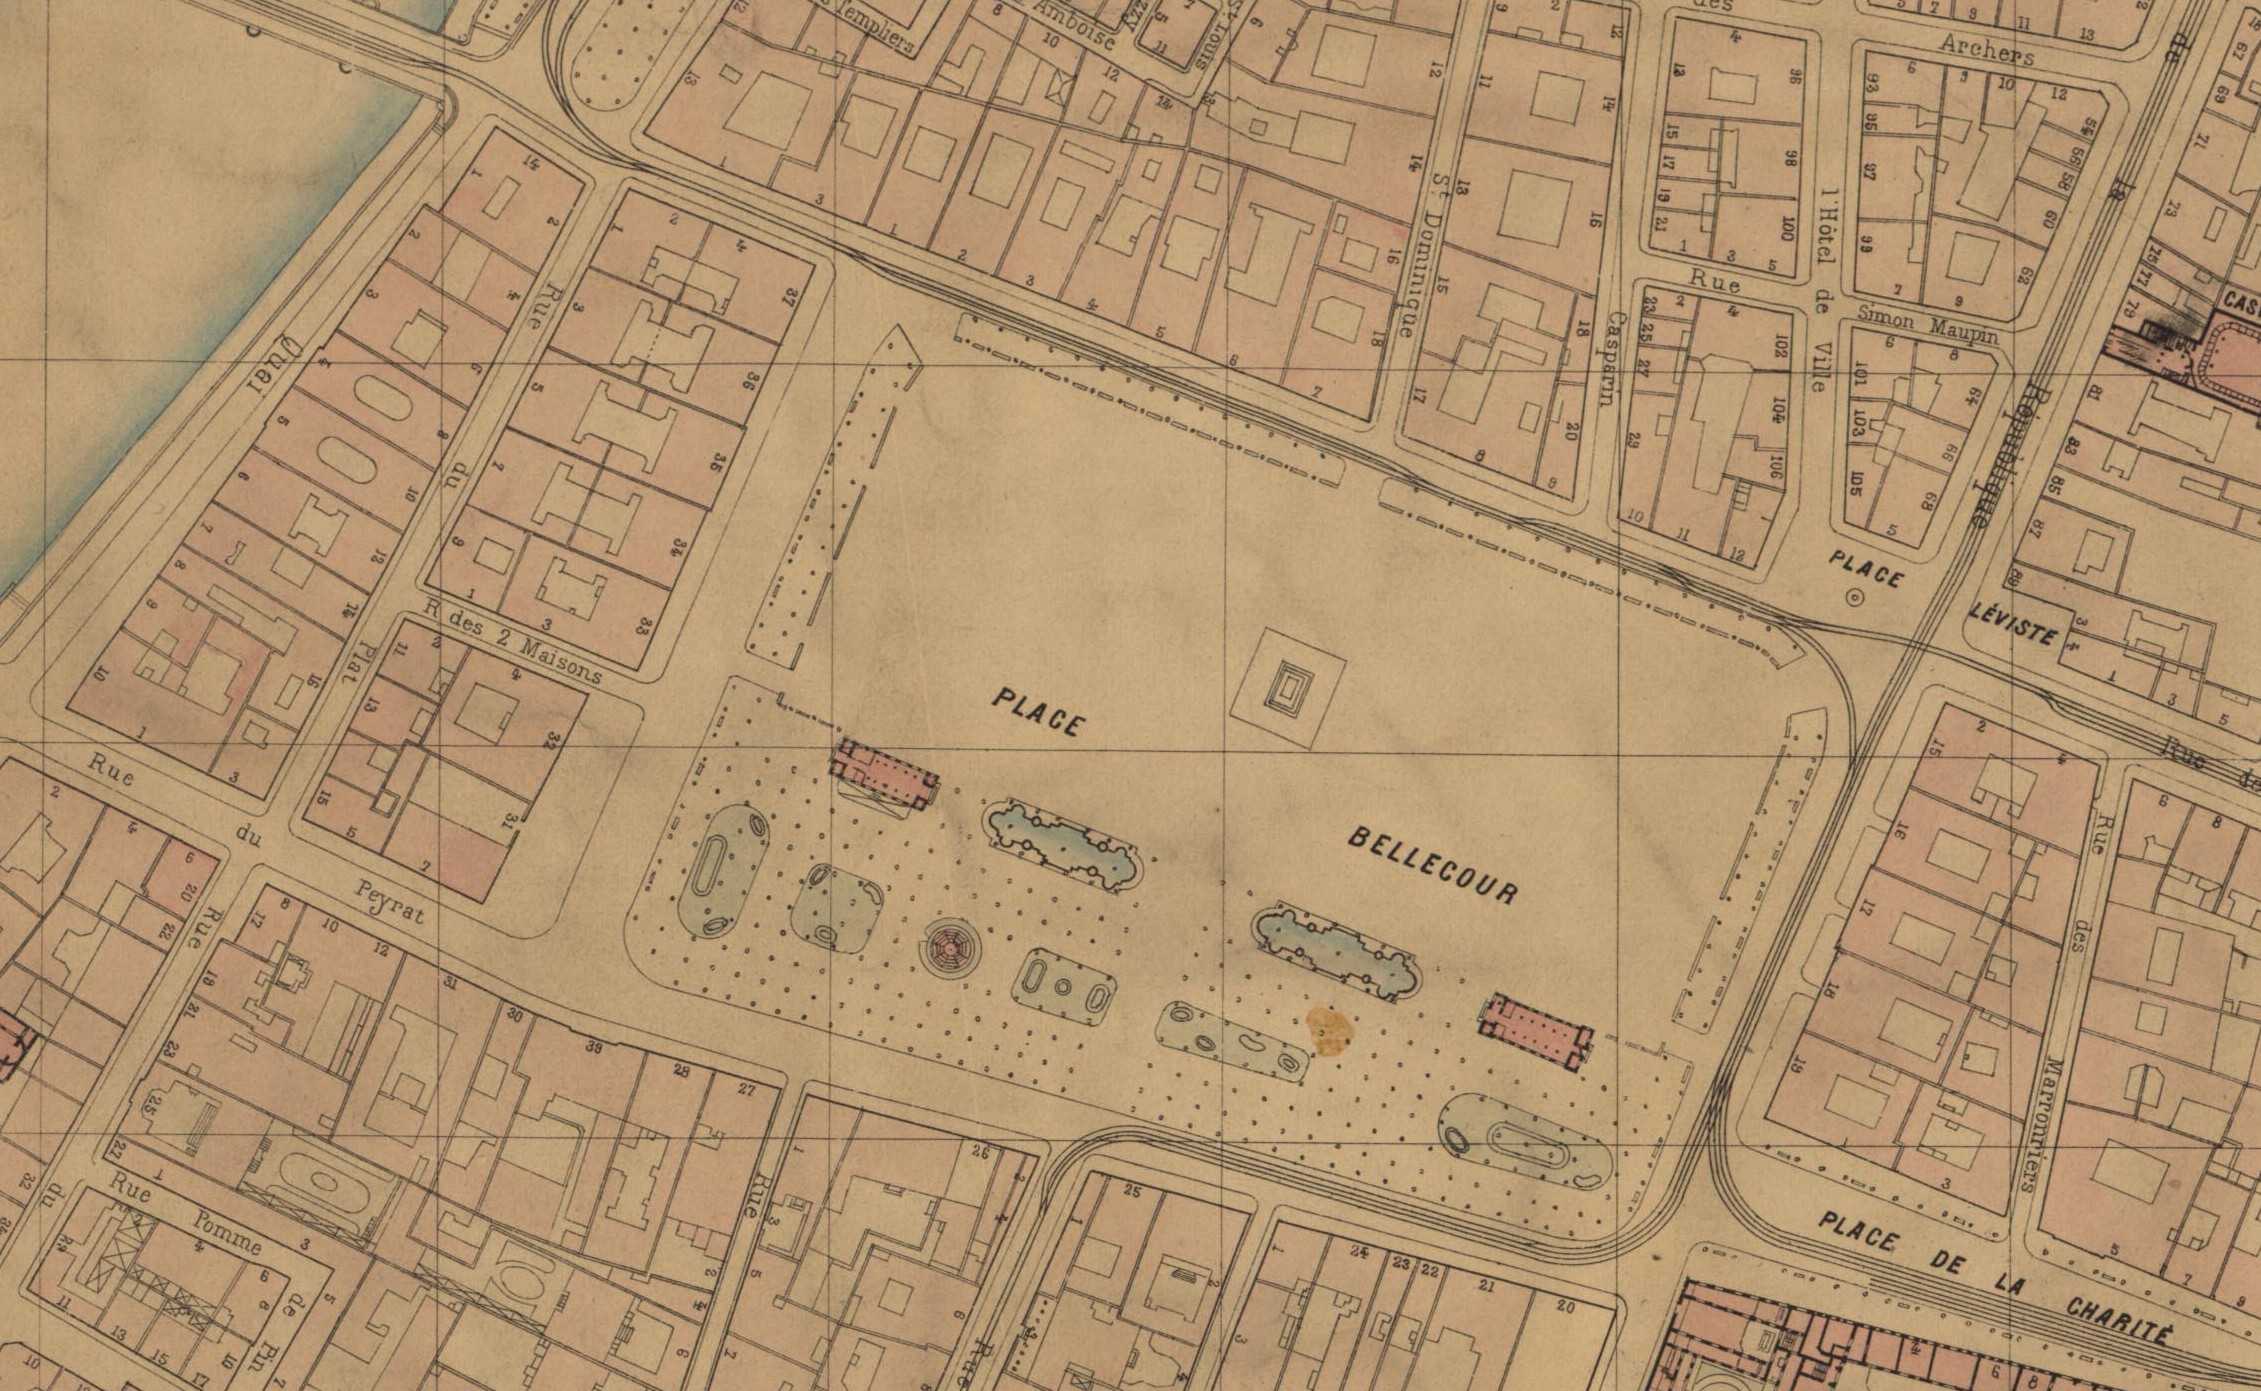 Place Bellecour : plan parcellaire au 1:2000e (1915, cote : 5S/15, détail)